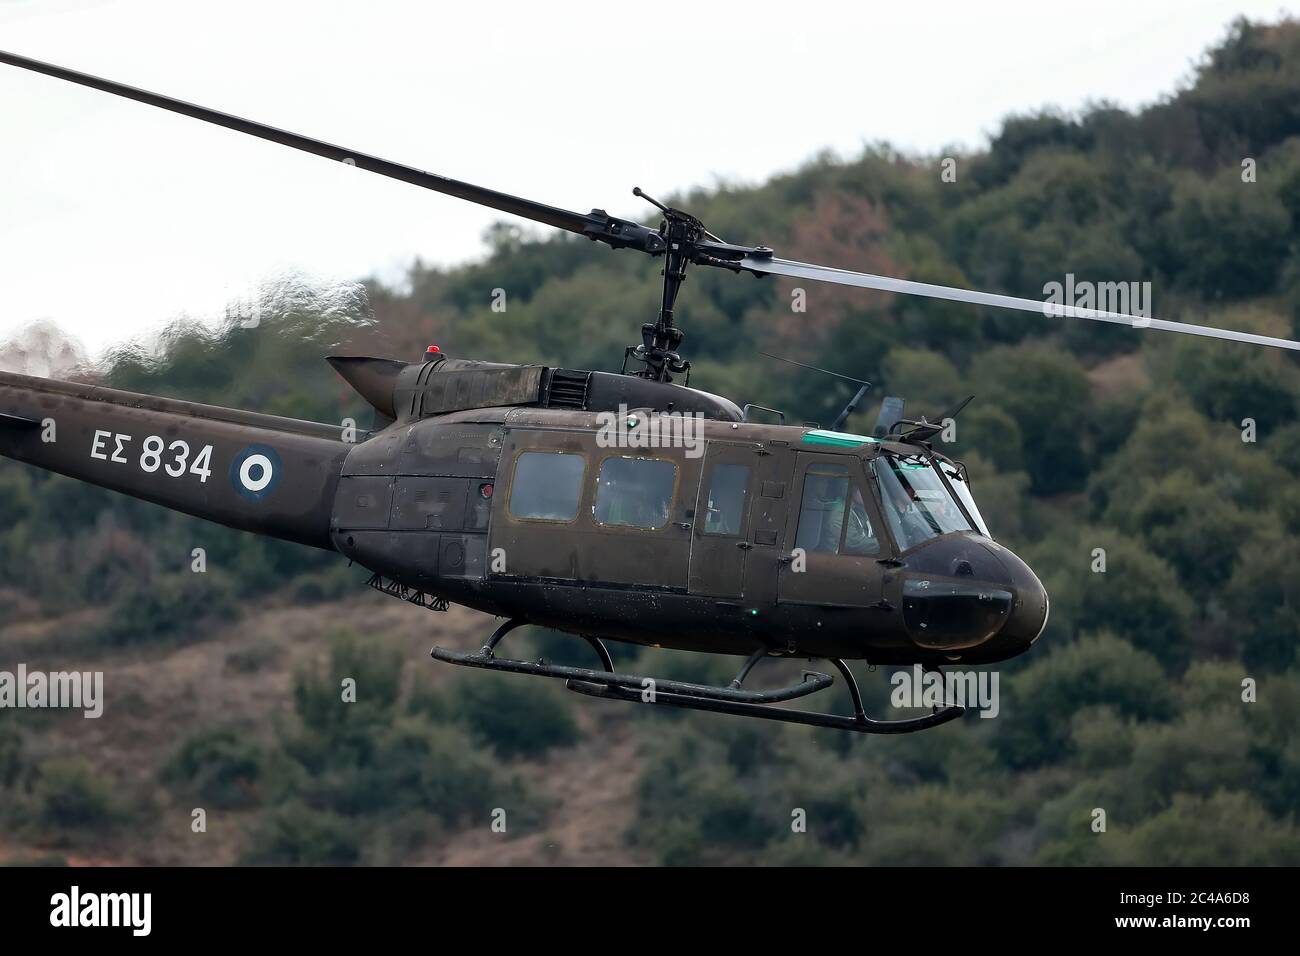 Askos, Grèce - 14 févr. 2020: UH-1H Huey hélicoptère prend part à un exercice militaire international avec un vrai feu (Golden Fleece -20) entre grec, Banque D'Images